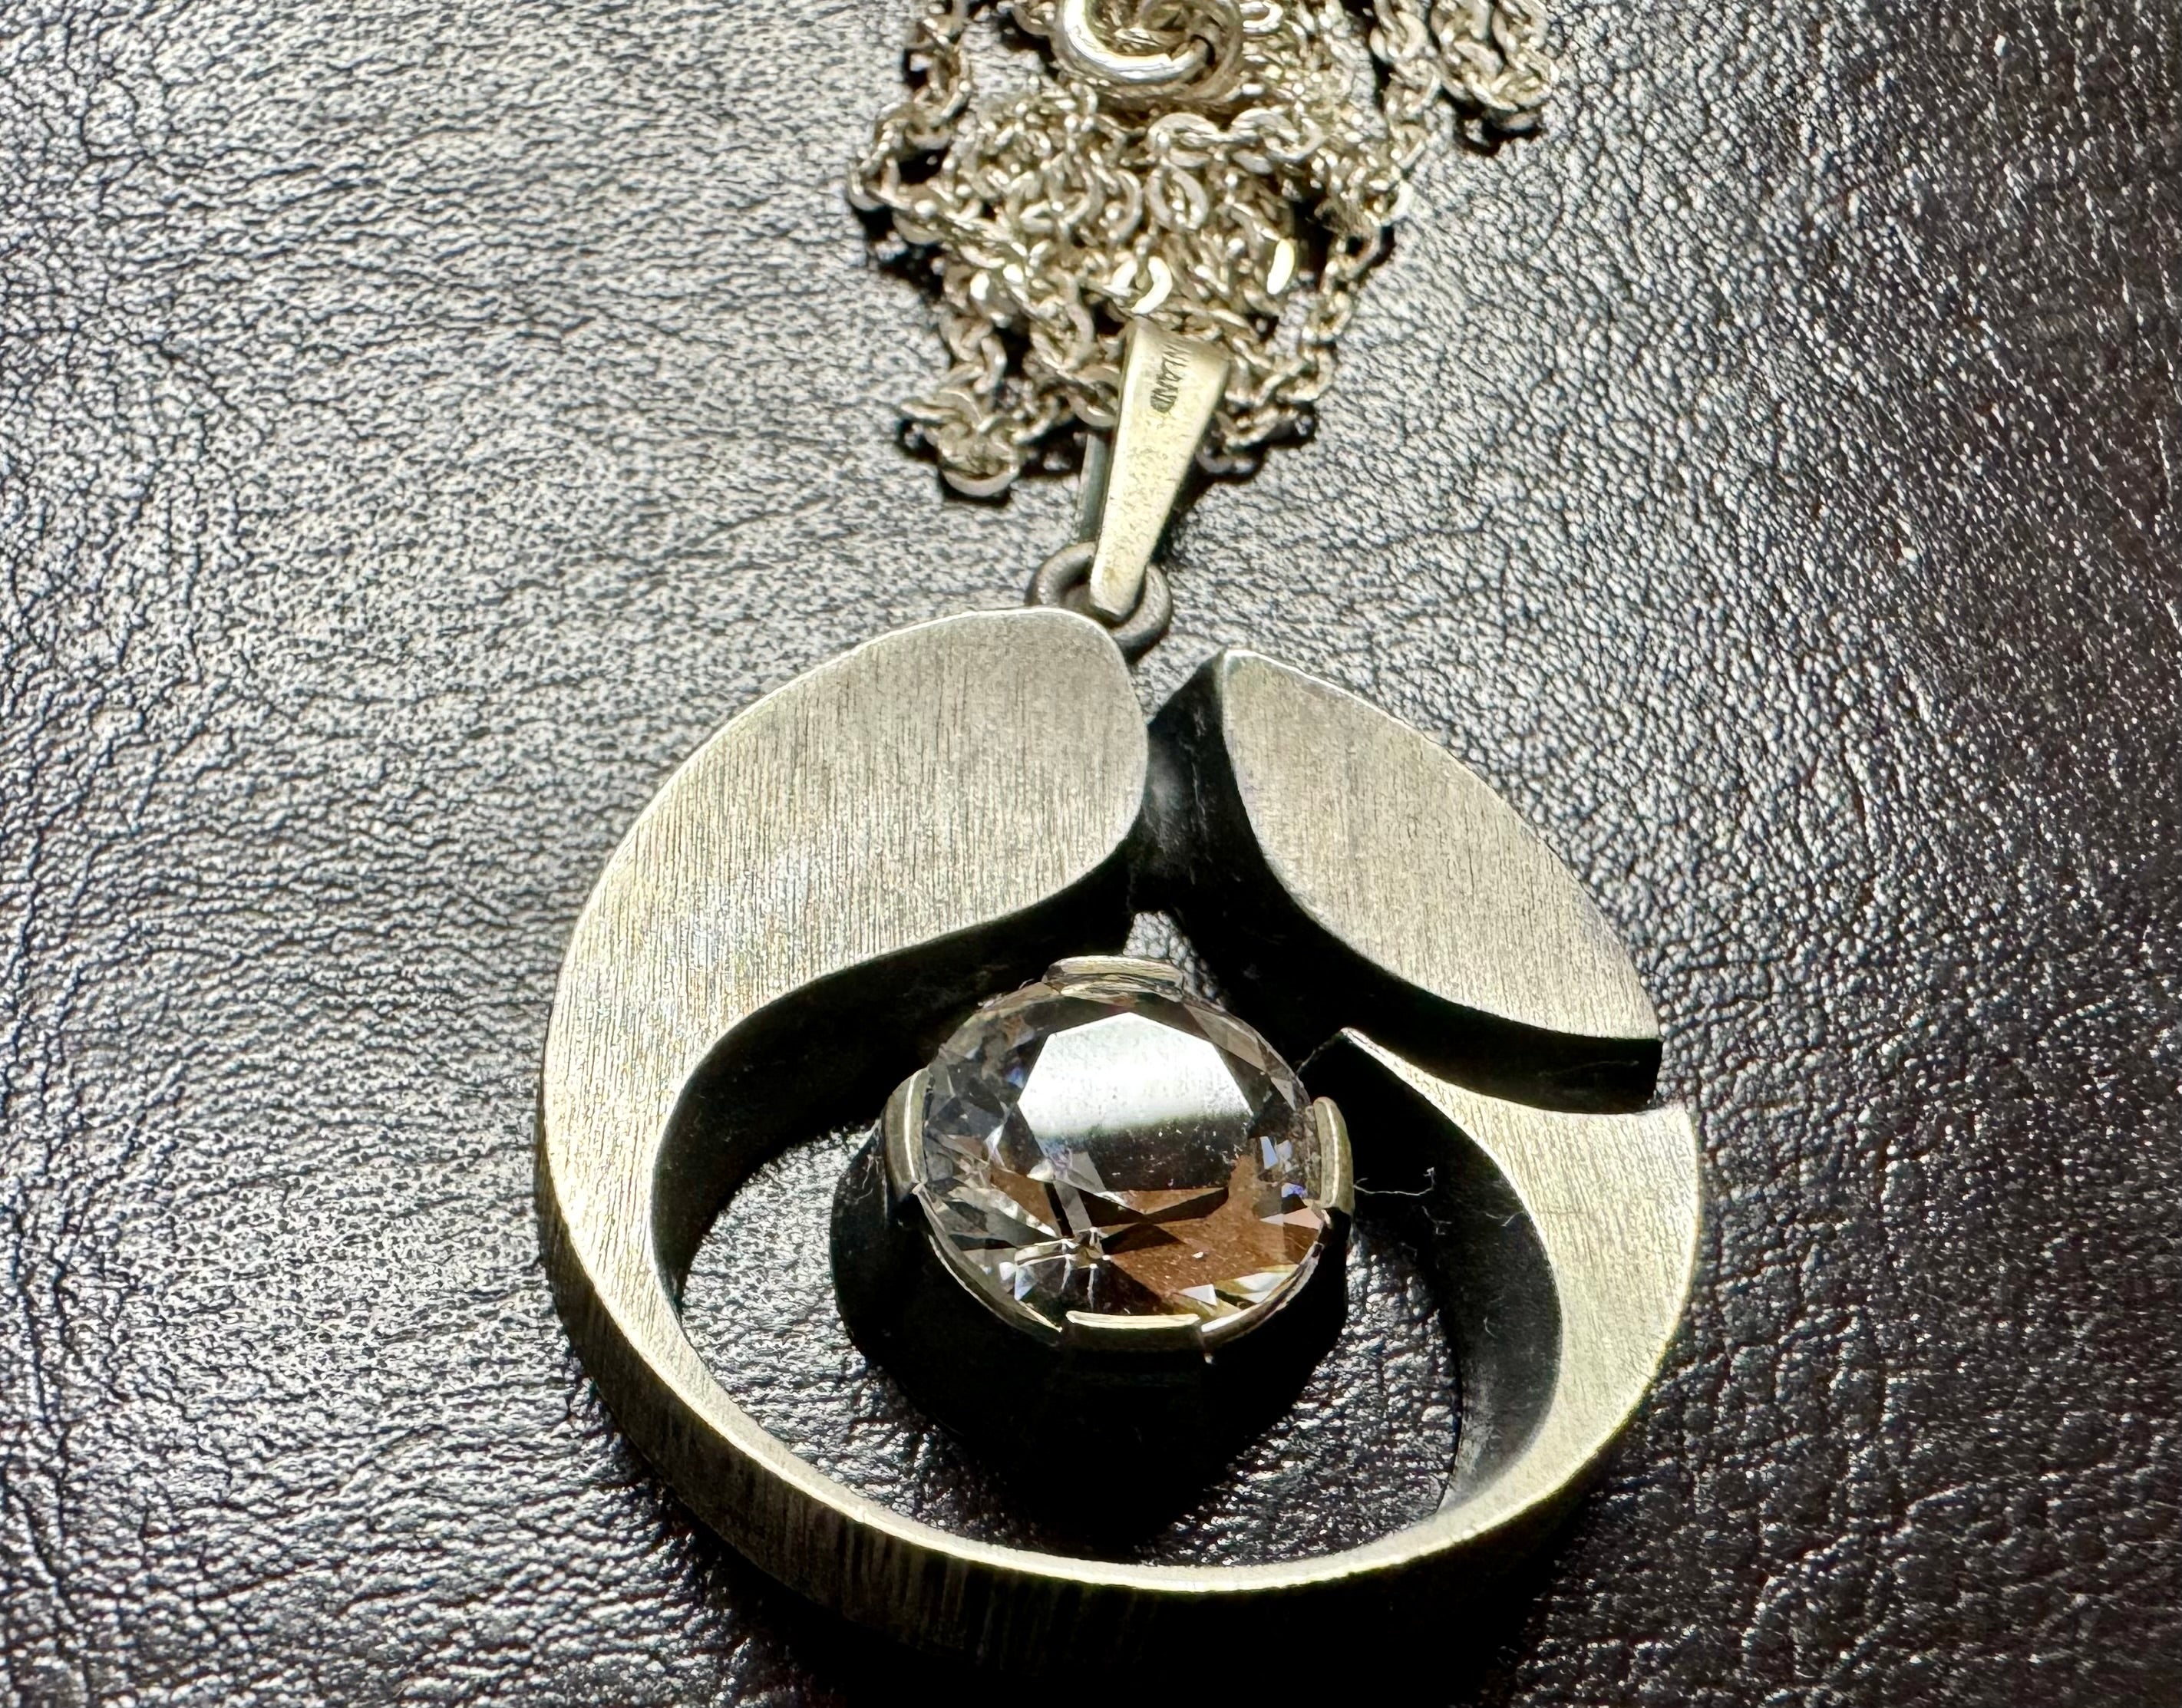 Collier en argent sterling par Karl Laine, Finlande, 1976
Argent 925H
Collier exquis avec pierre claire.
Cristal de roche.
3cm de diamètre avec pendentif
chaîne de 53 cm de long